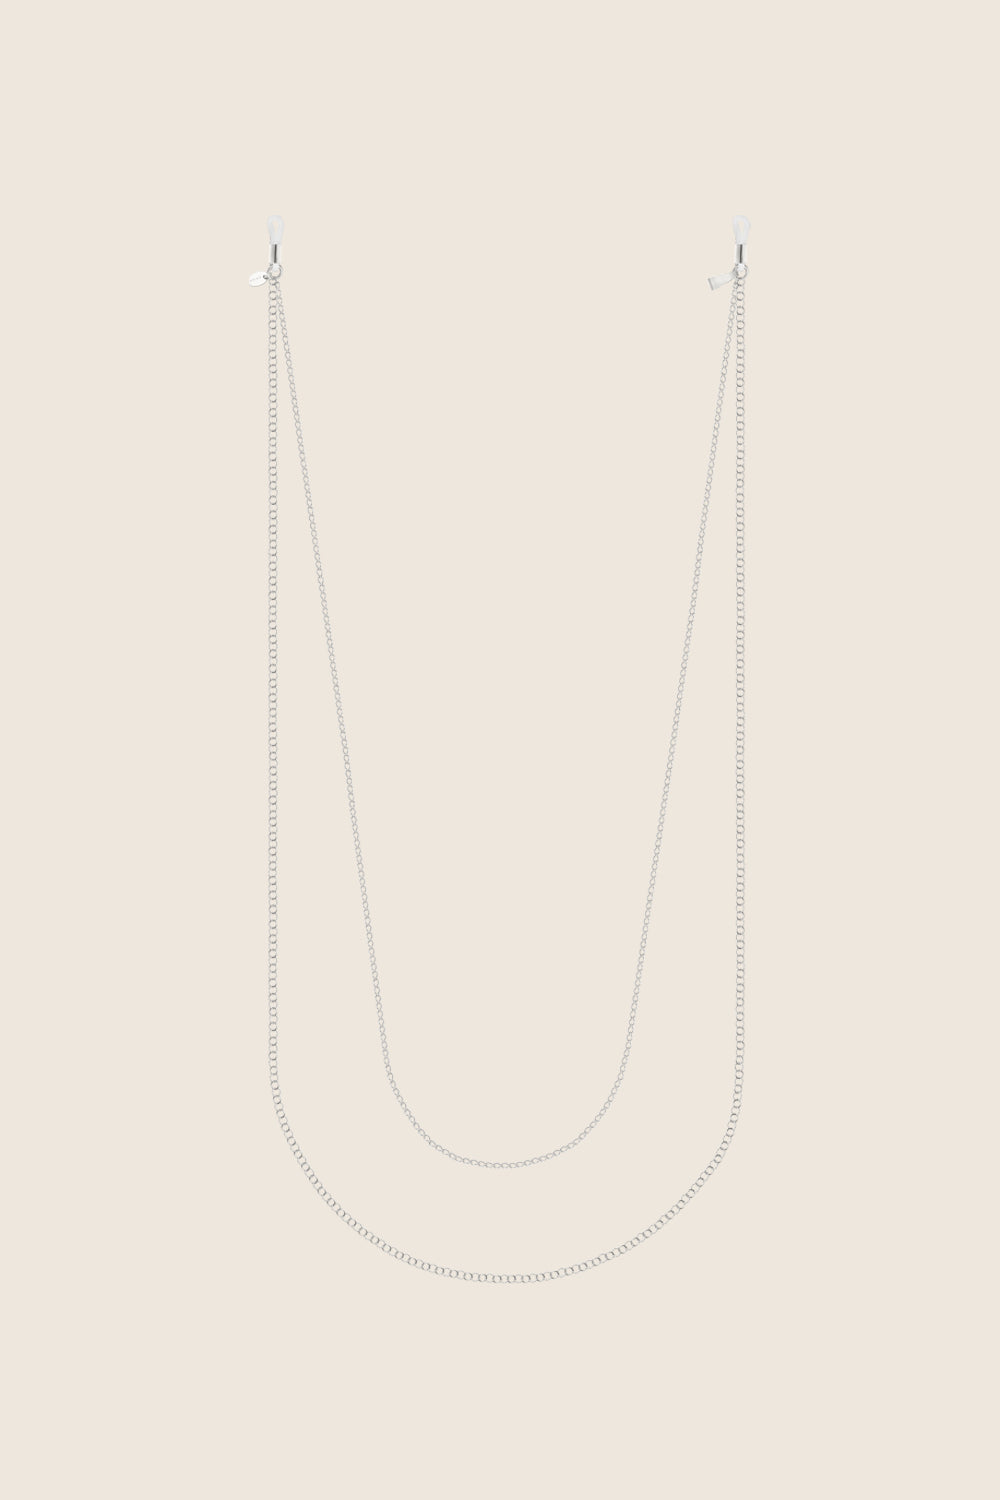 podwójny łańcuszek do okularów srebro 925 LENS II biżuteria UMIAR